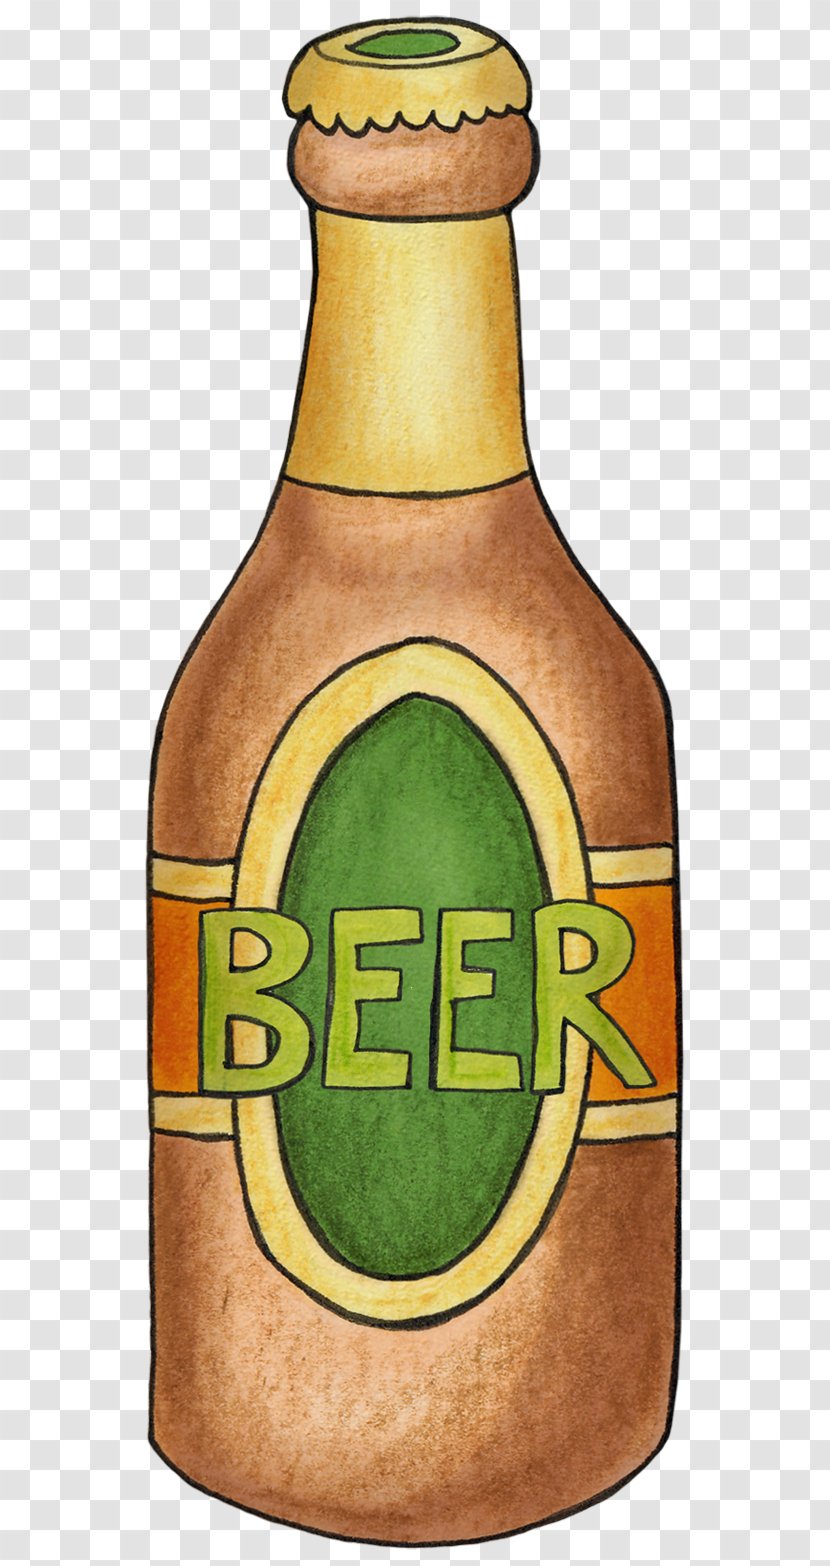 Beer Bottle - Gratis - Hand-painted Bottles Transparent PNG